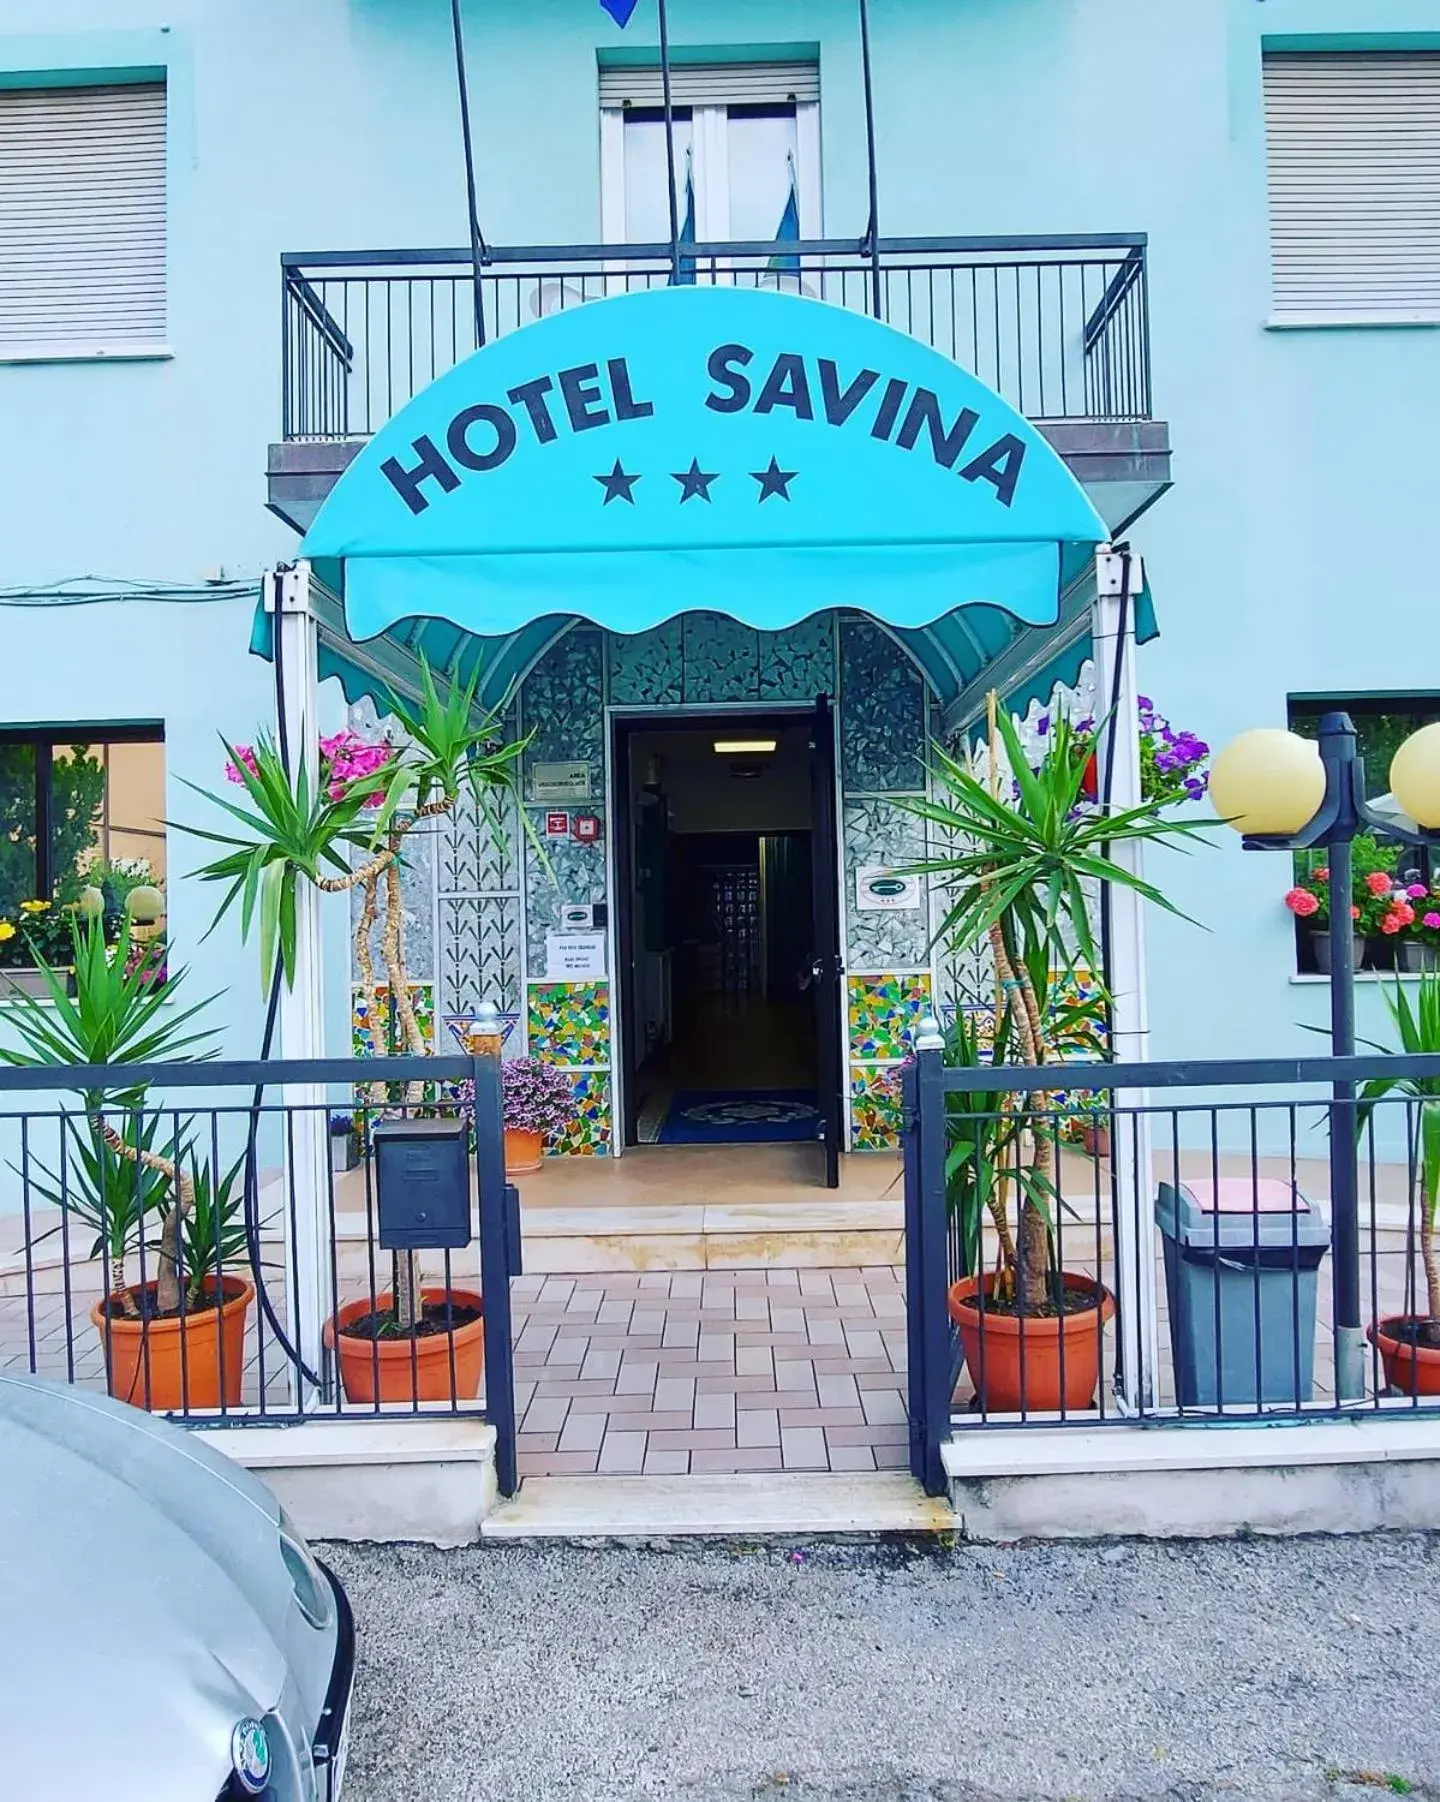 Facade/entrance in Hotel Savina